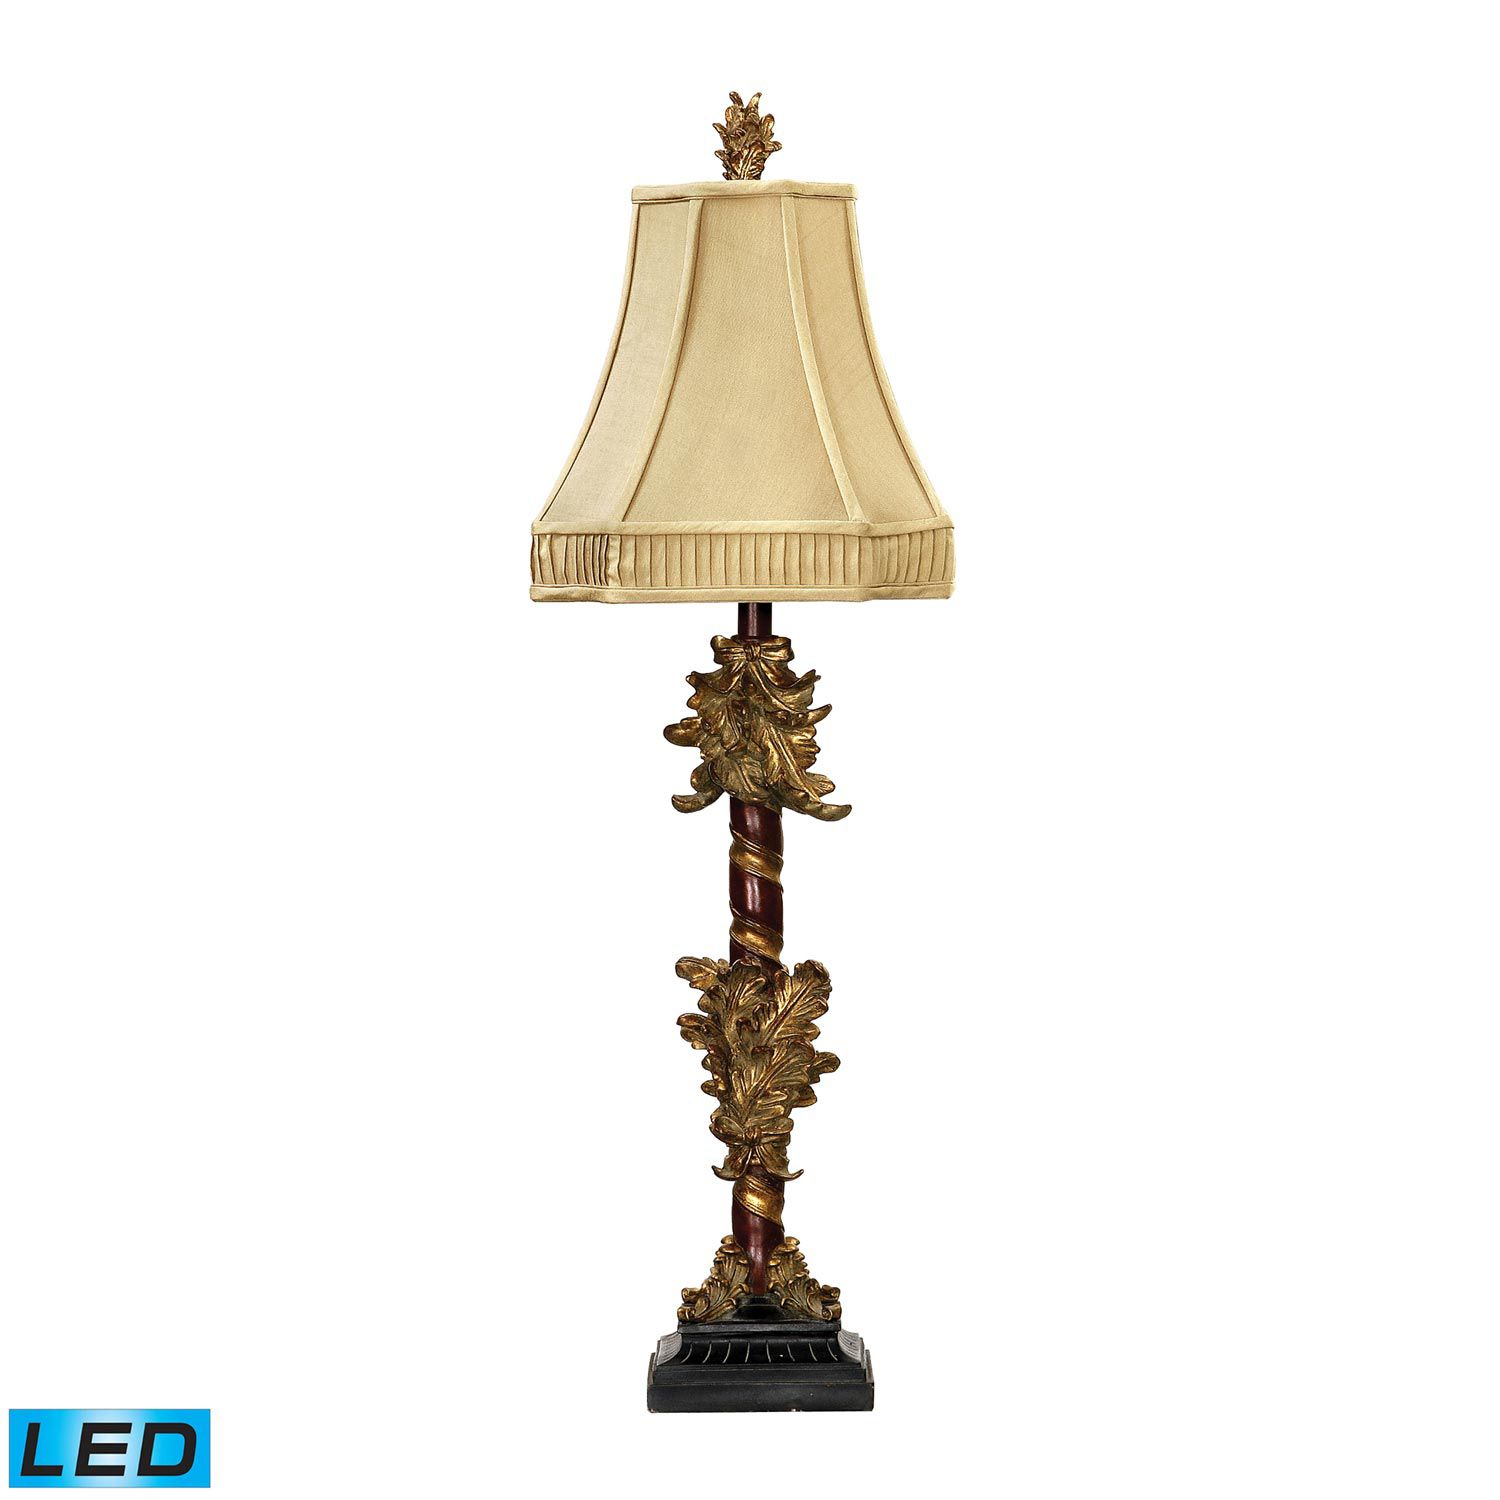 Elk Lighting 91-036-LED Leaf Cluster Candlestick Table Lamp - Gold Leaf / Black